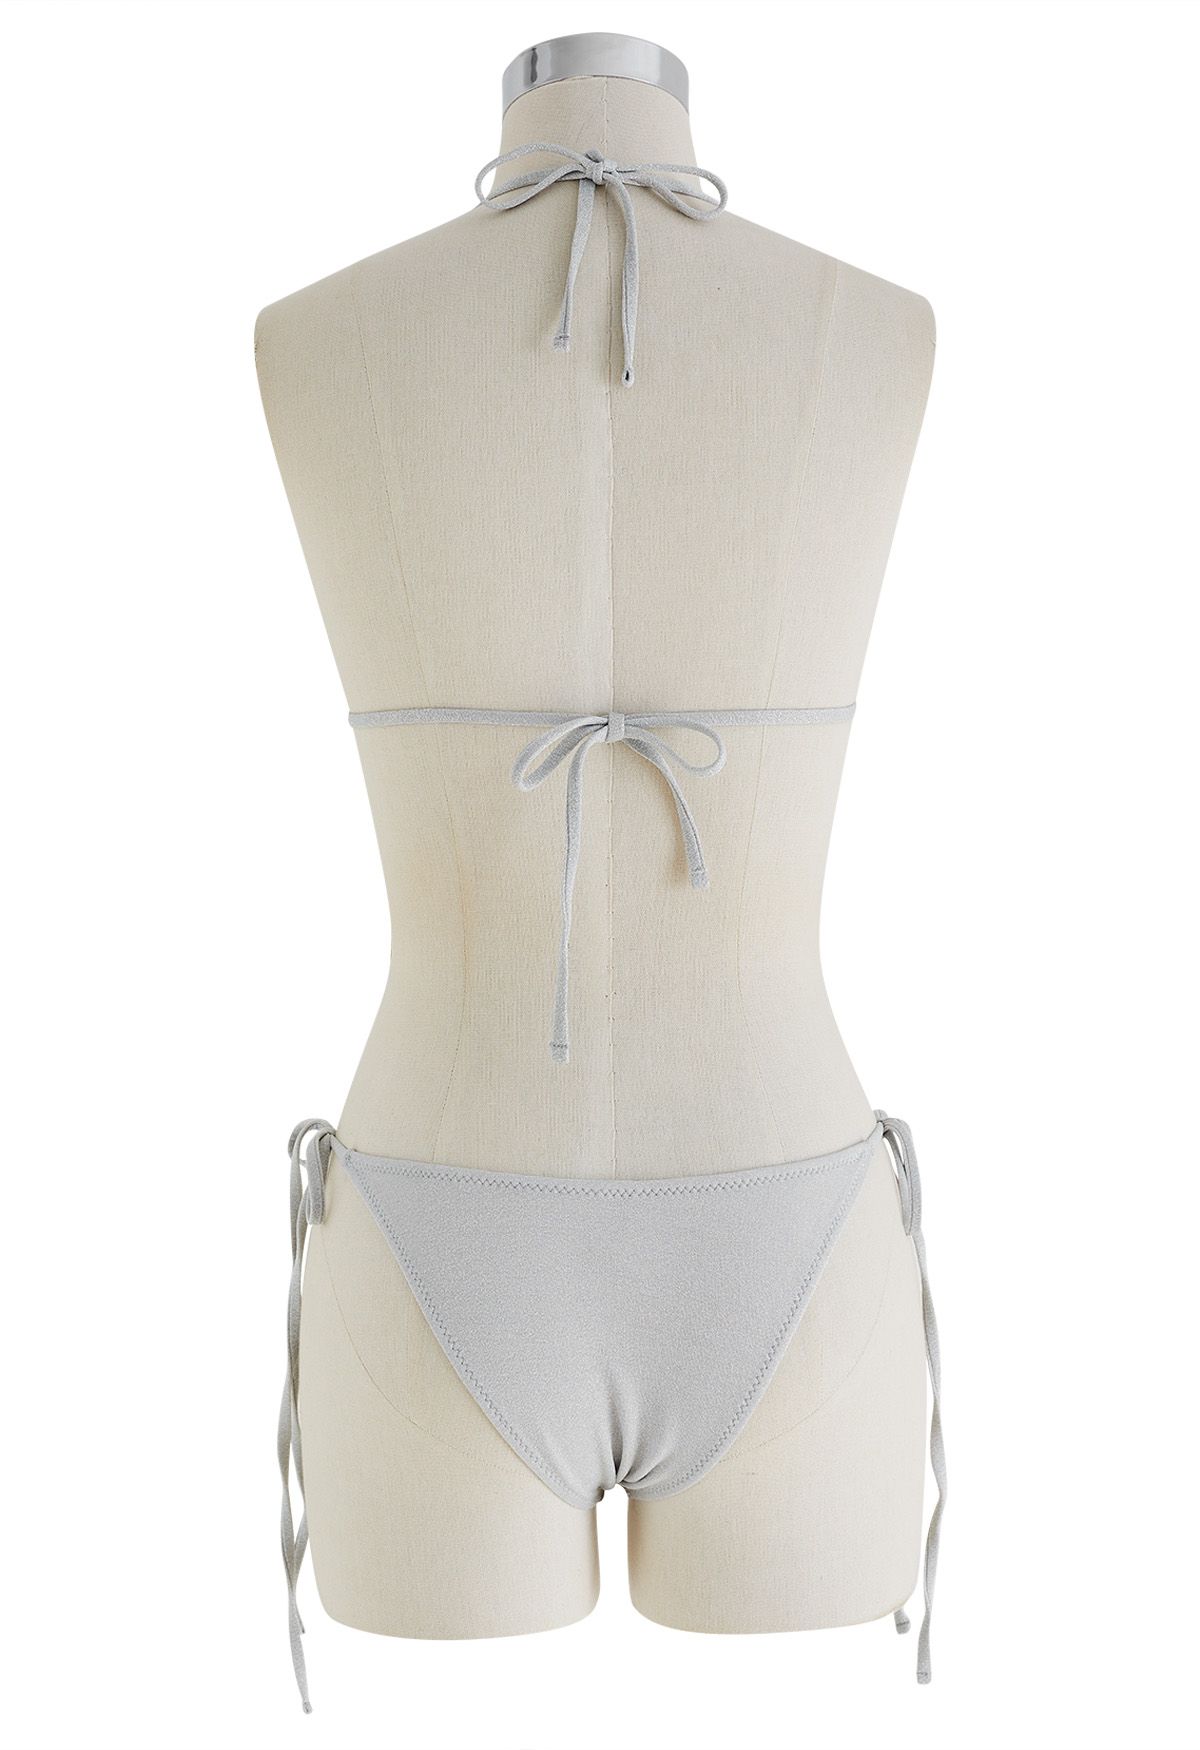 Deslumbrante conjunto de bikini con cordón metálico en gris